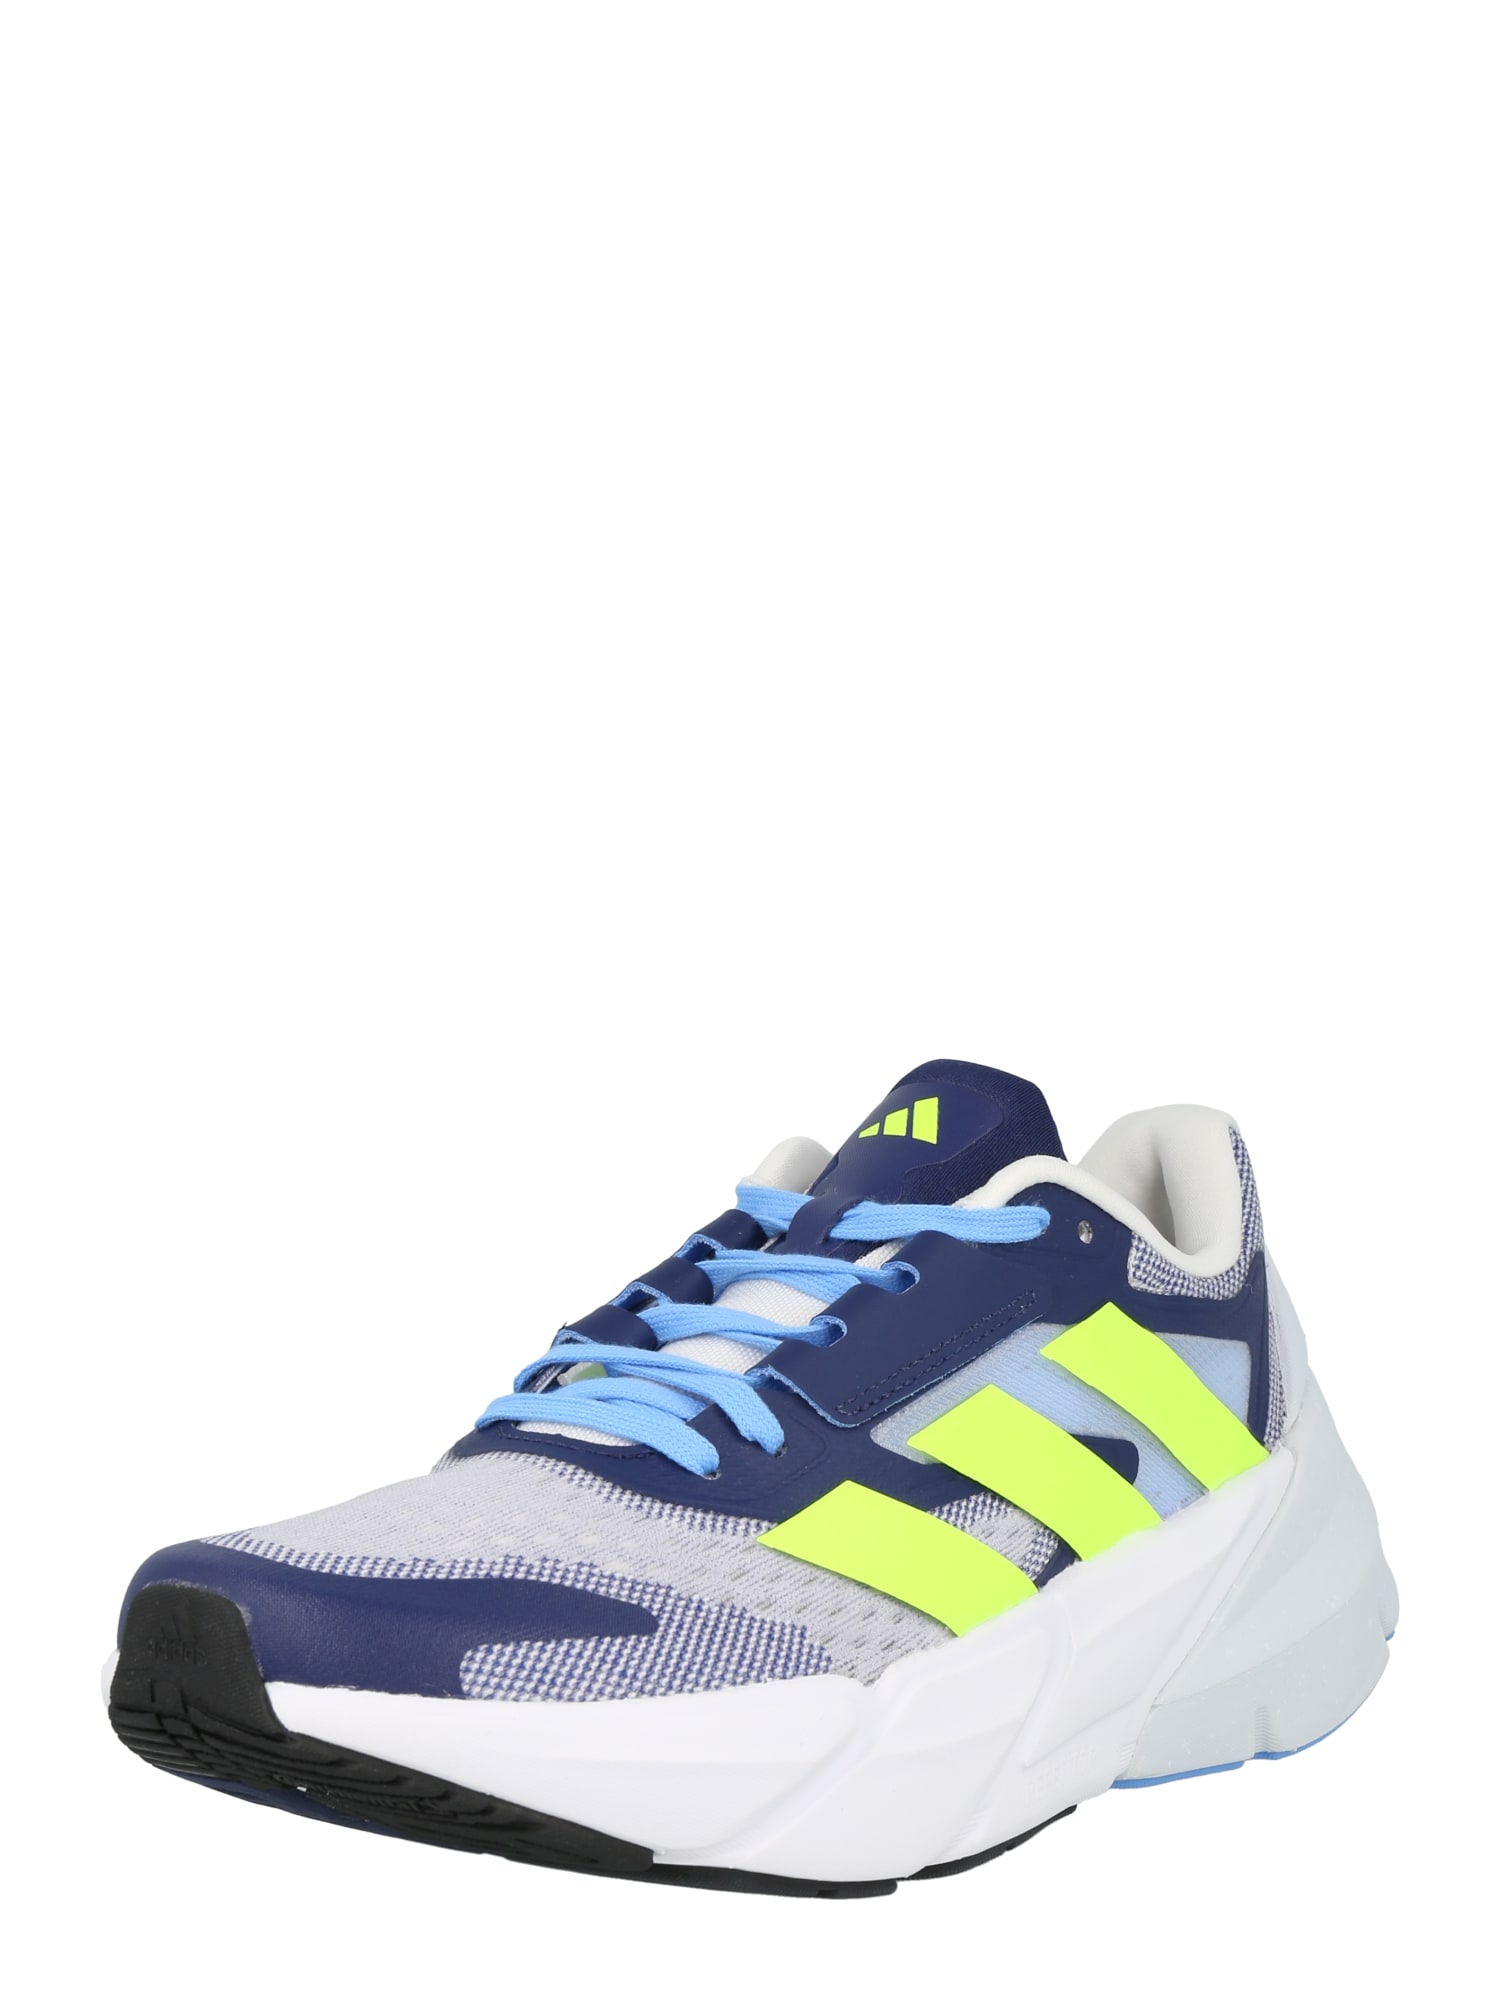 ADIDAS PERFORMANCE Bėgimo batai 'ADISTAR 2 M' mėlyna / neoninė geltona / balta